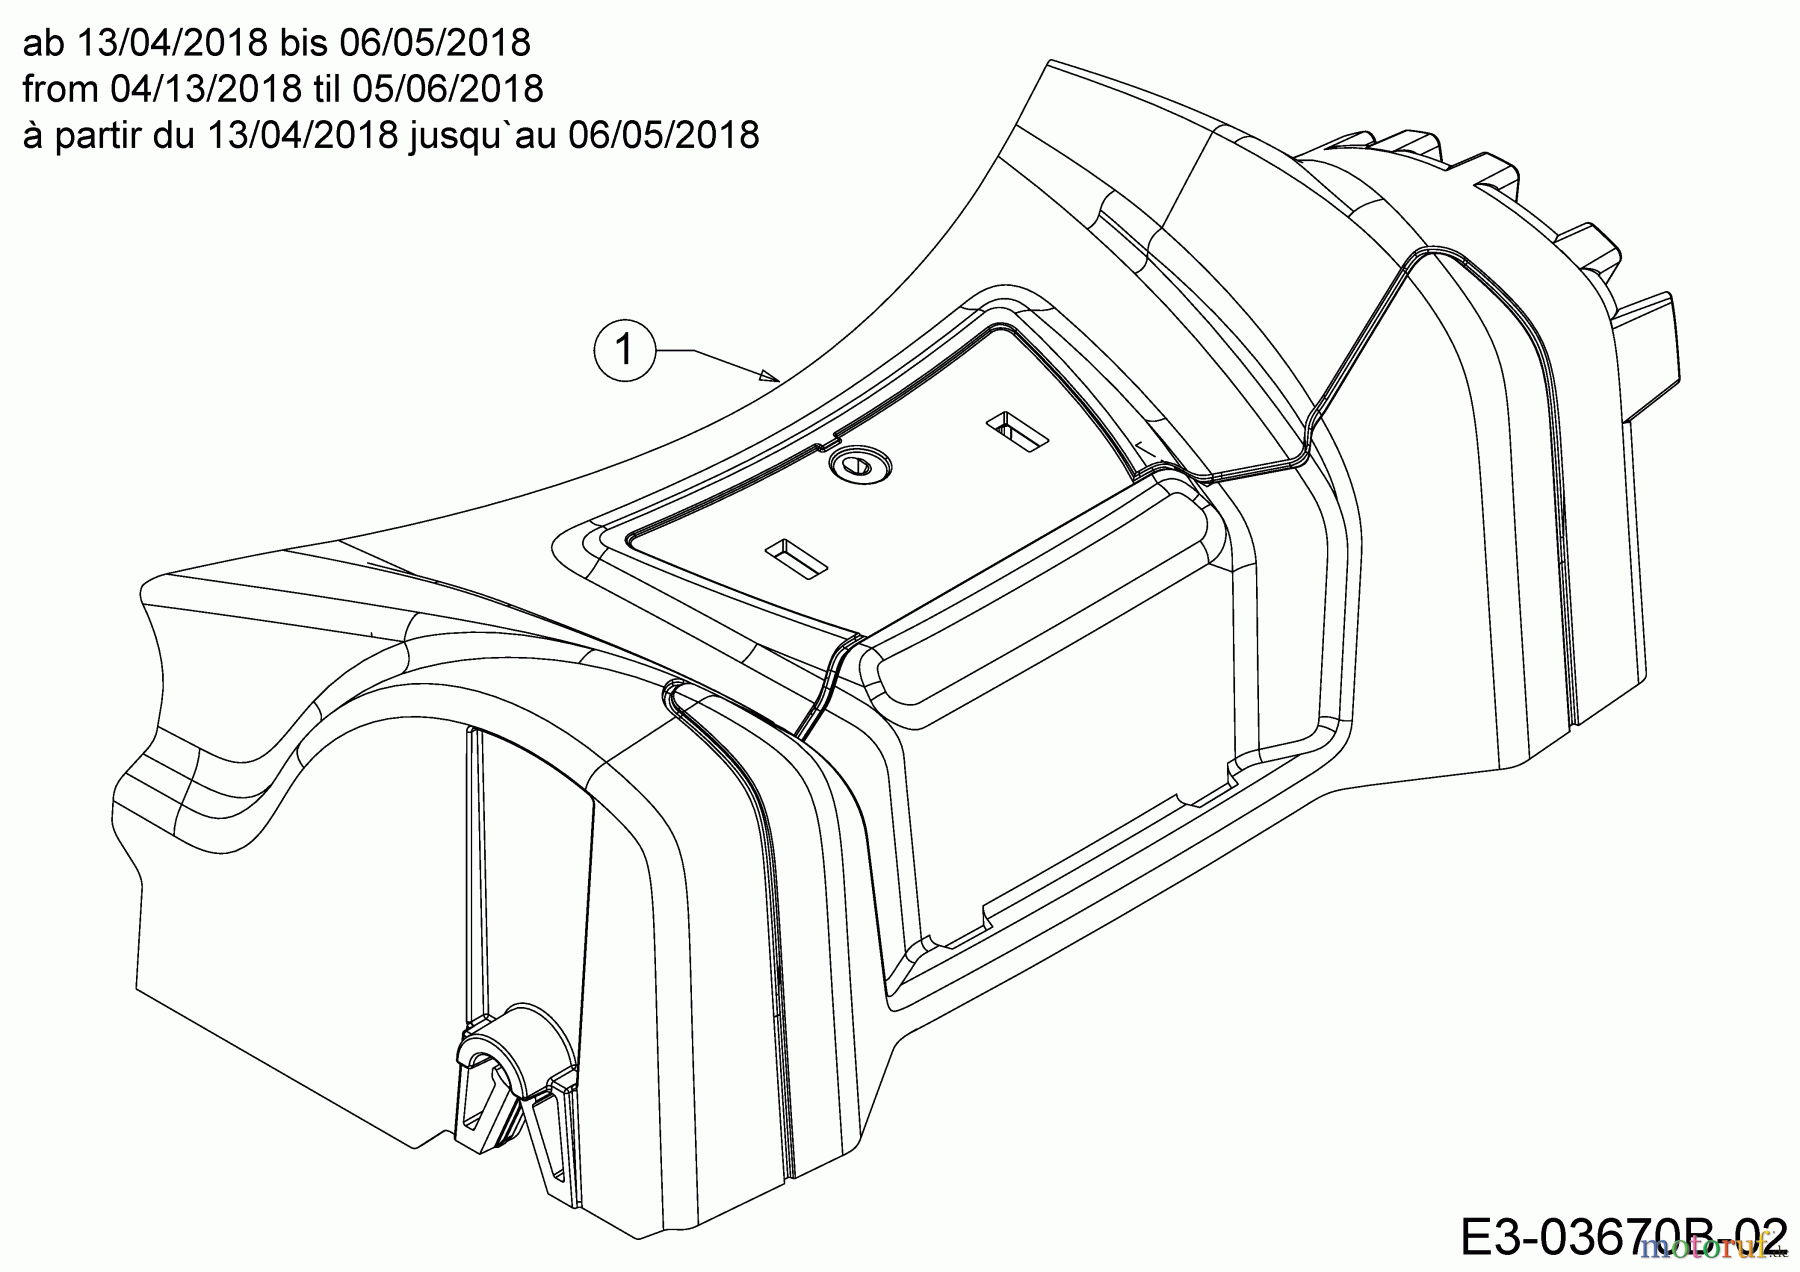  MTD Motormäher mit Antrieb Smart 42 SPO 12D-LASJ600  (2018) Abdeckung Vorderachse ab 13/04/2018 bis 06/05/2018